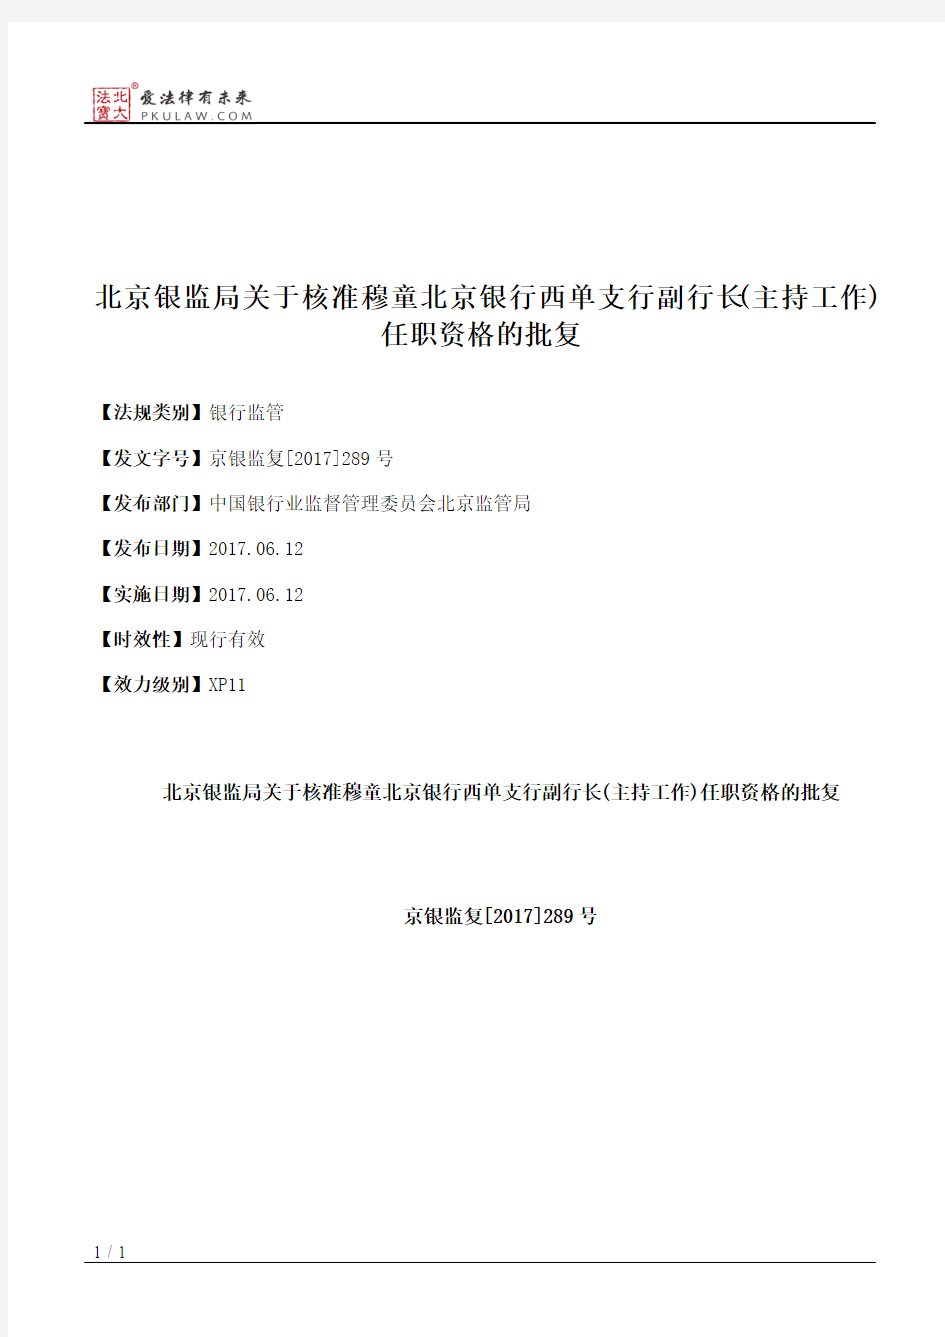 北京银监局关于核准穆童北京银行西单支行副行长(主持工作)任职资